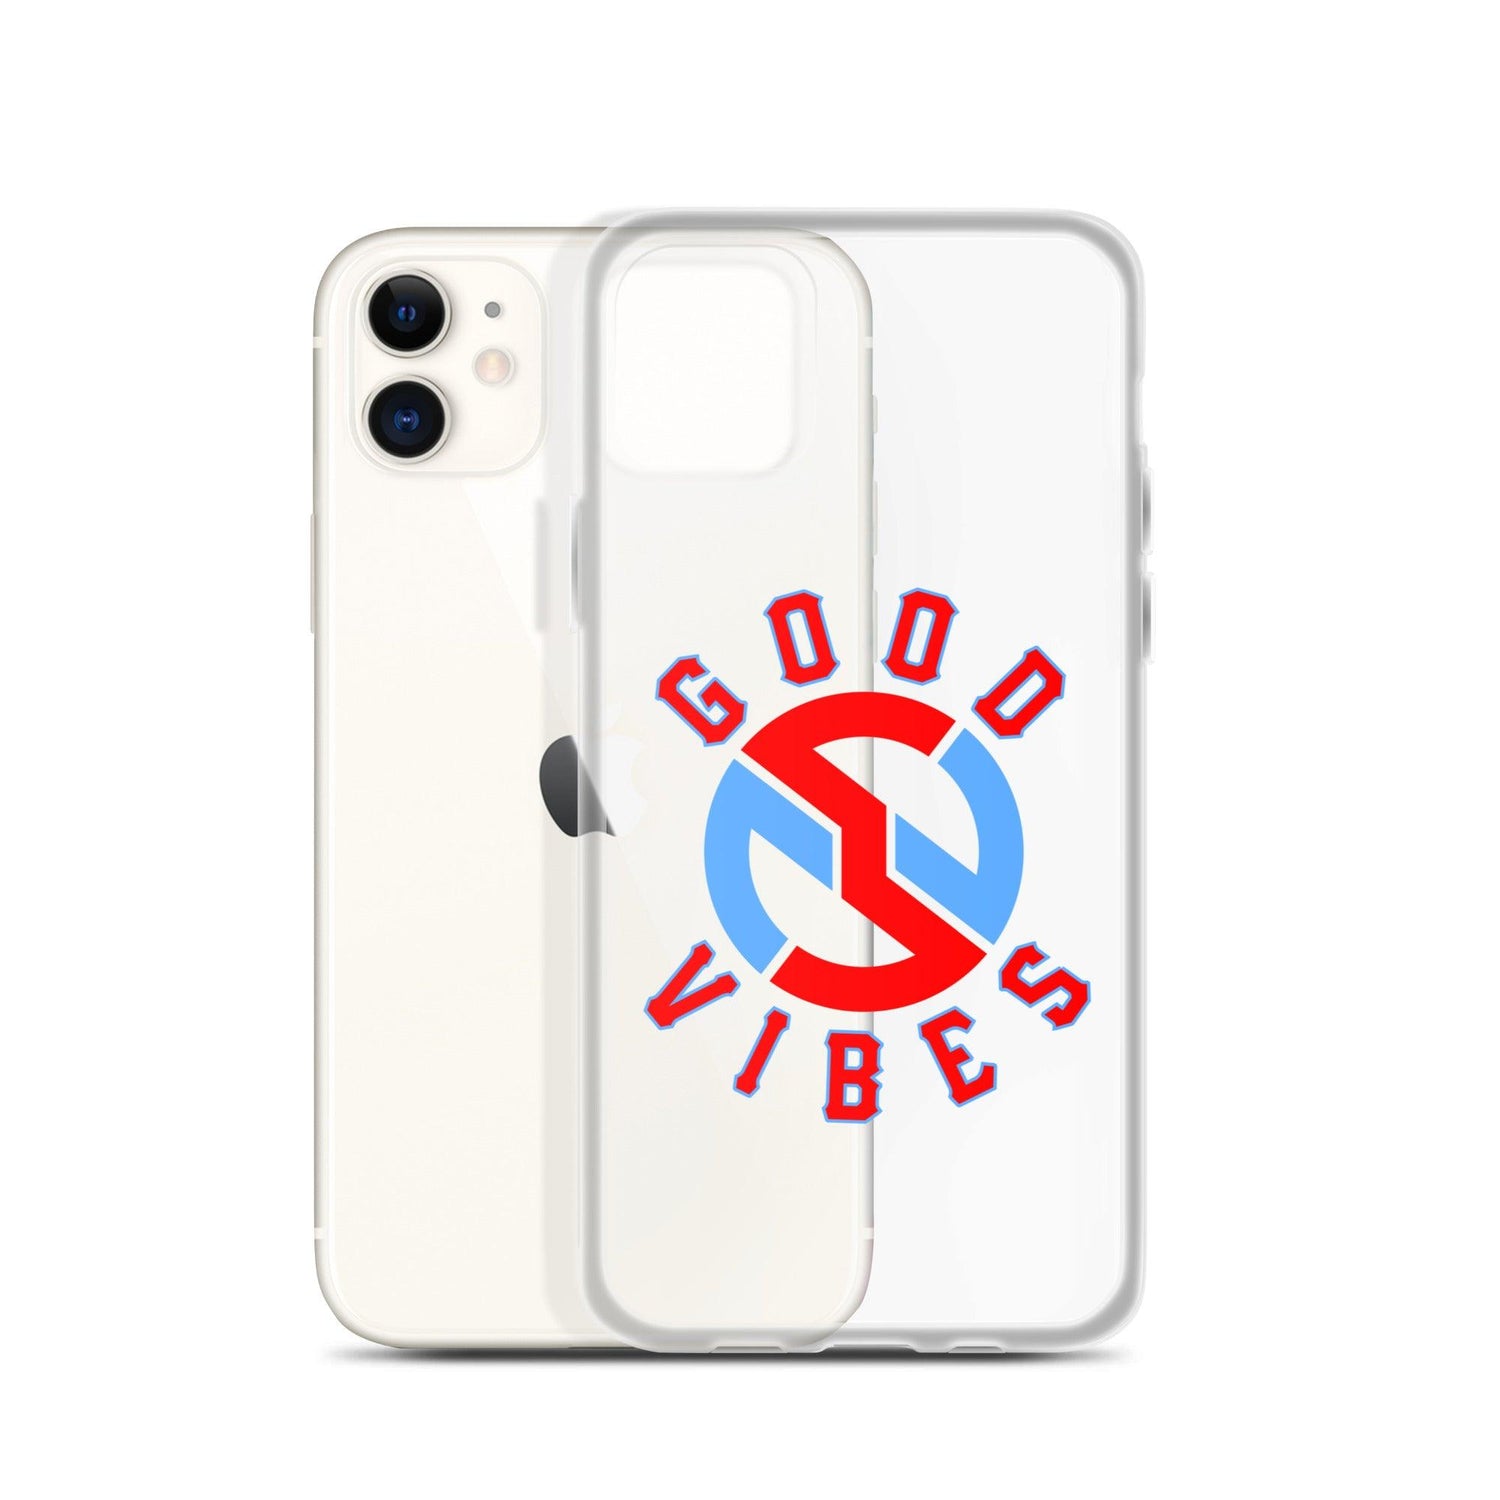 Nick Swiney “Heritage” iPhone Case - Fan Arch